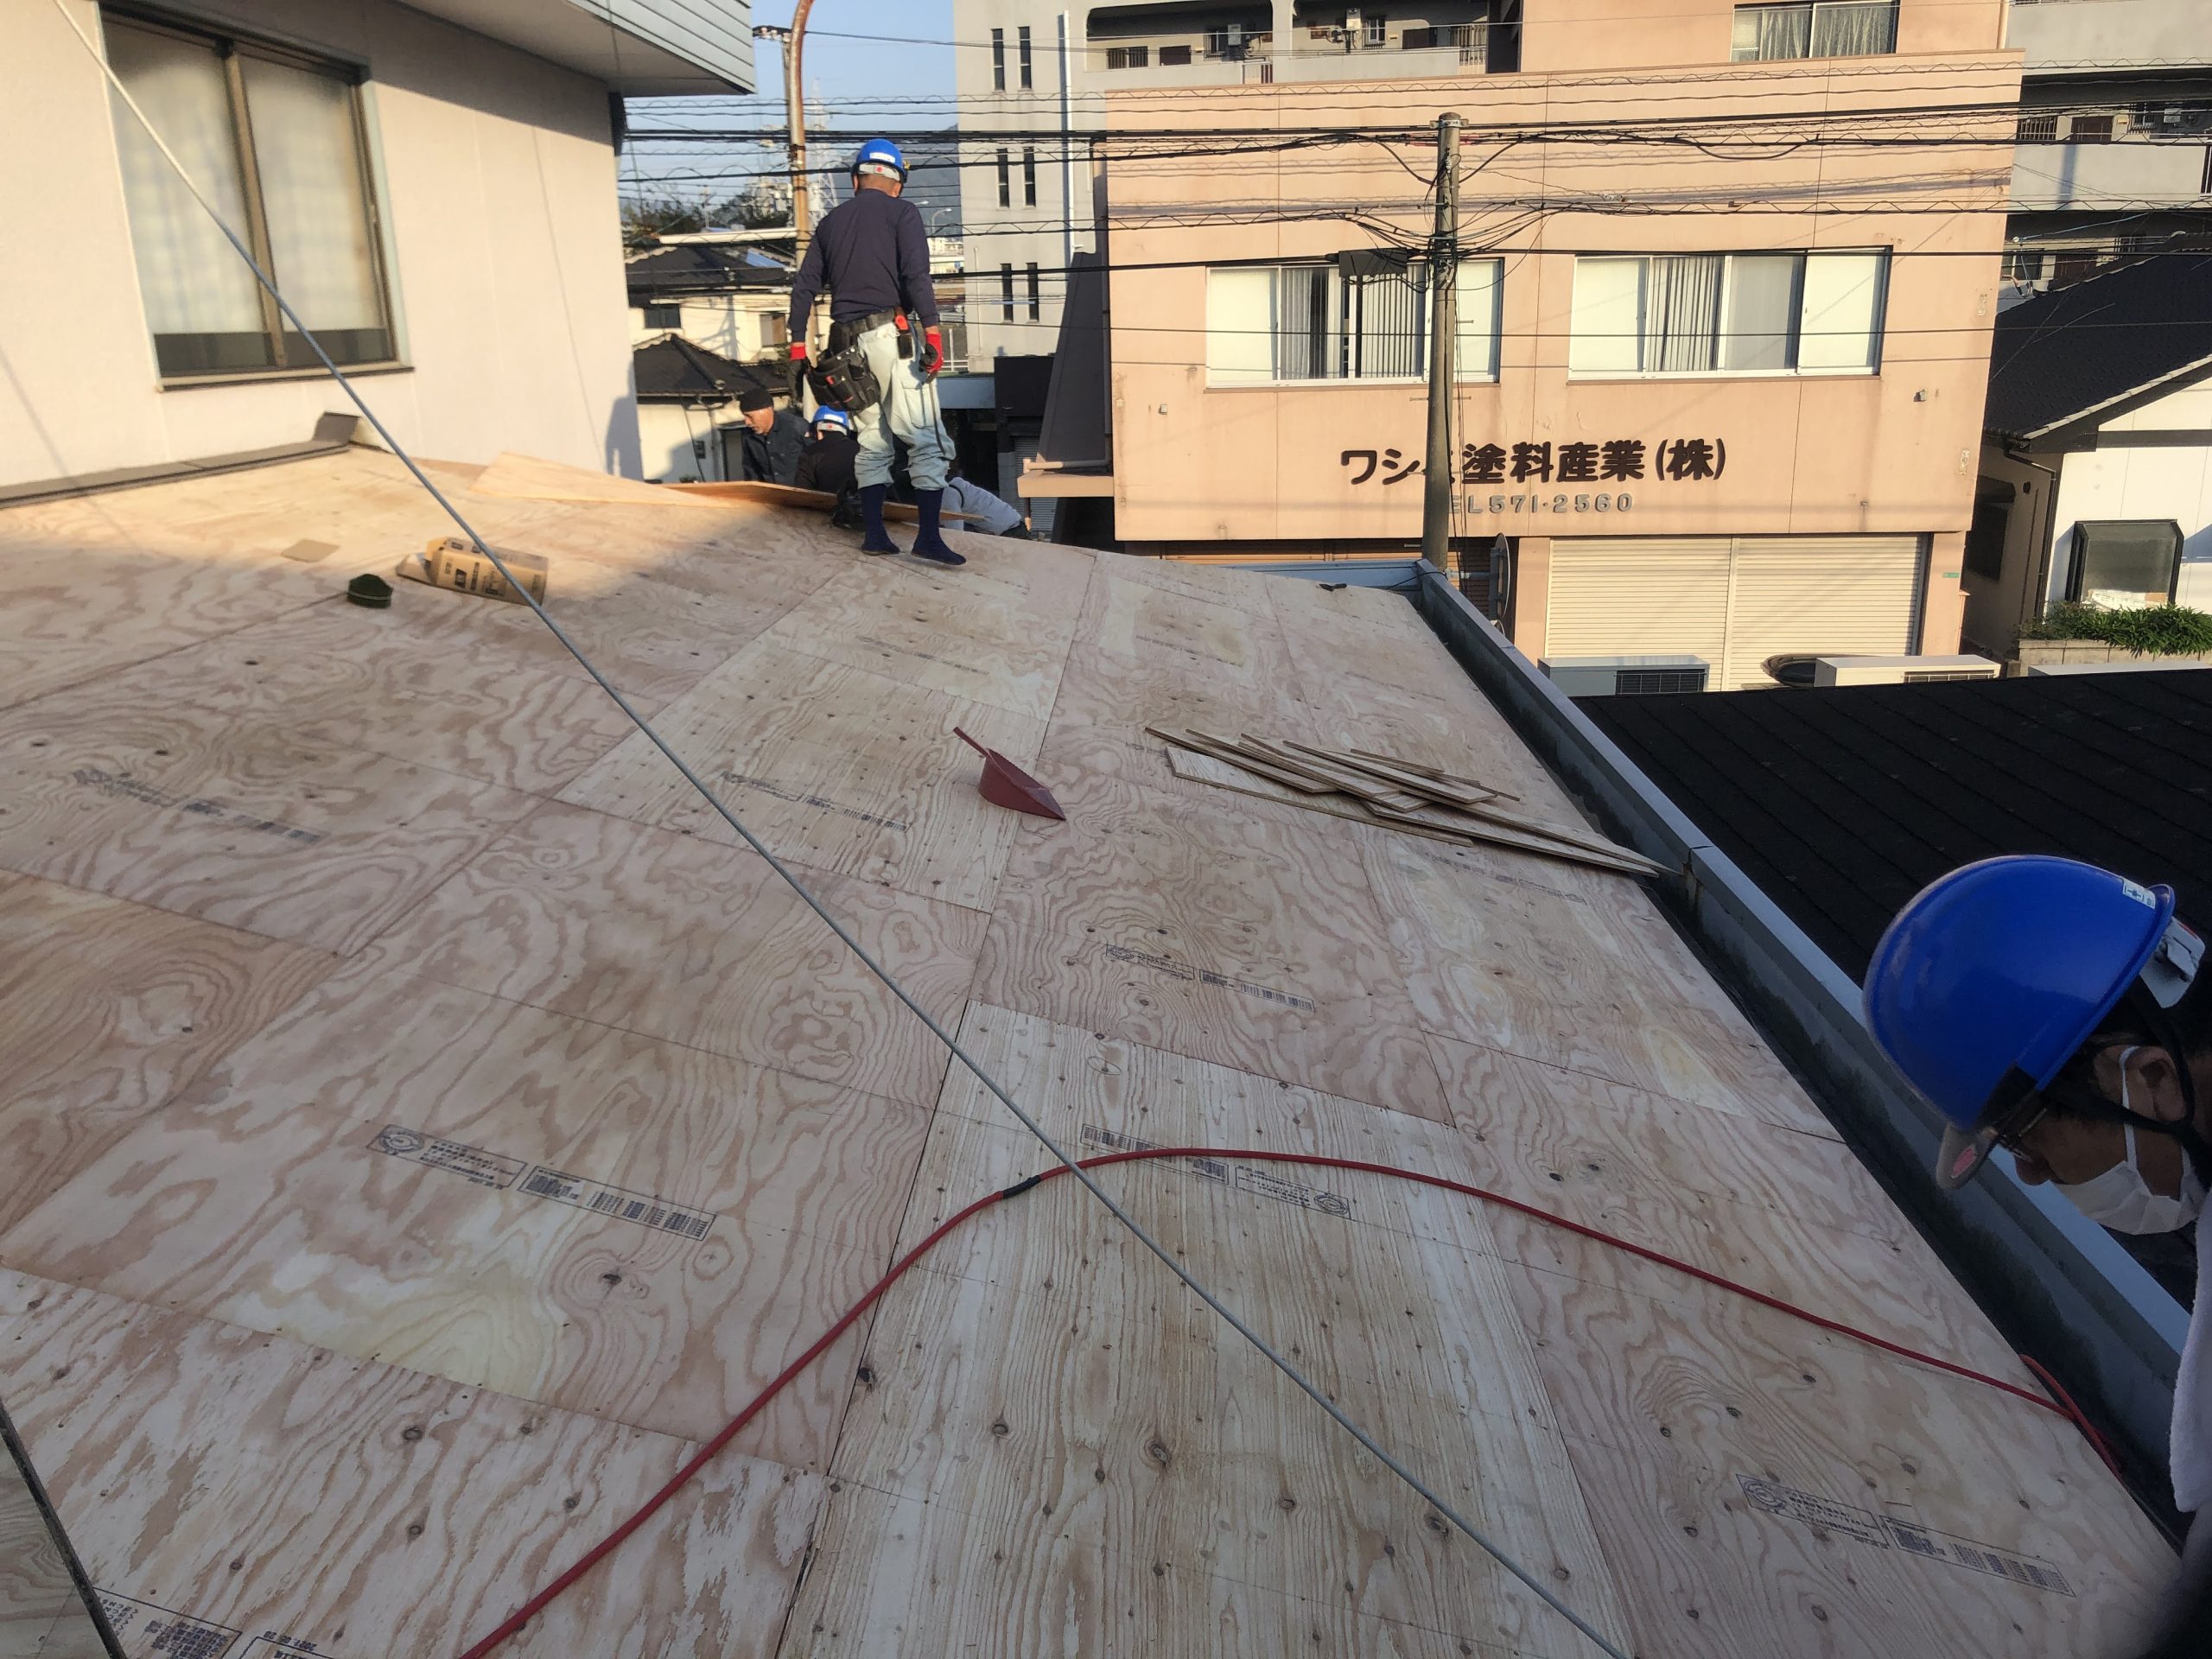 【屋根下地工事 状況】
野地板の増し張りを行うことによって、屋根の重量が重くなってしまいますが、強度が高くなるため地震や台風などに対しての耐久性が高くなります。